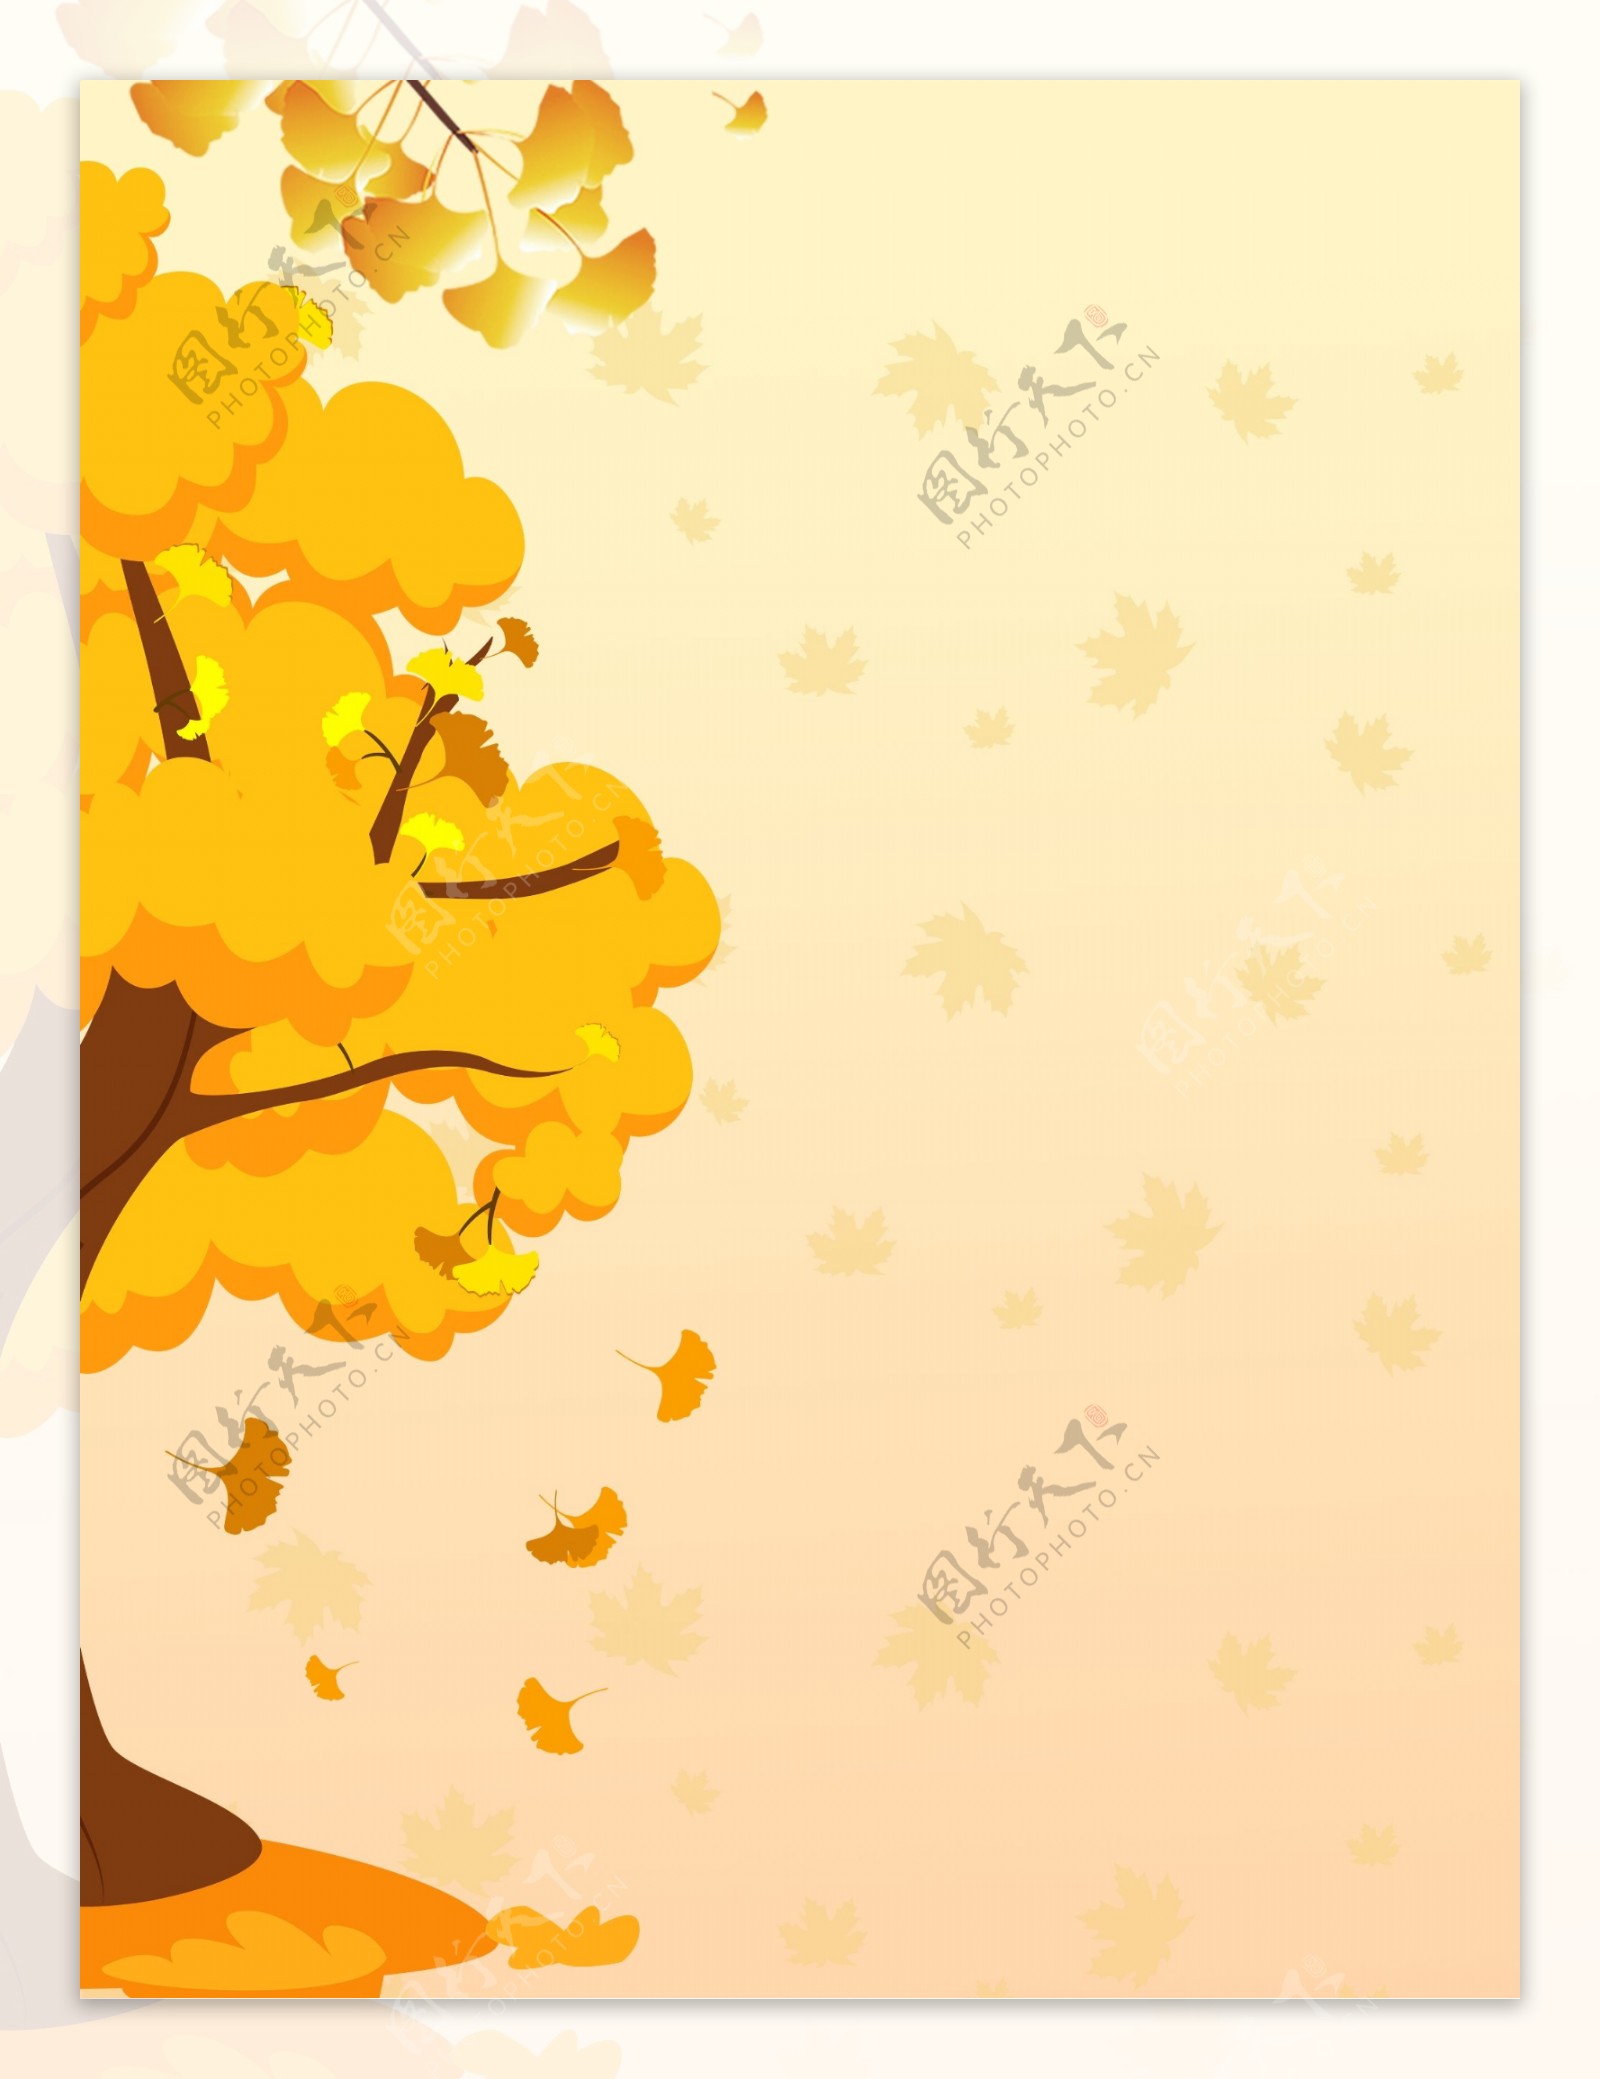 彩绘秋季银杏落叶背景设计